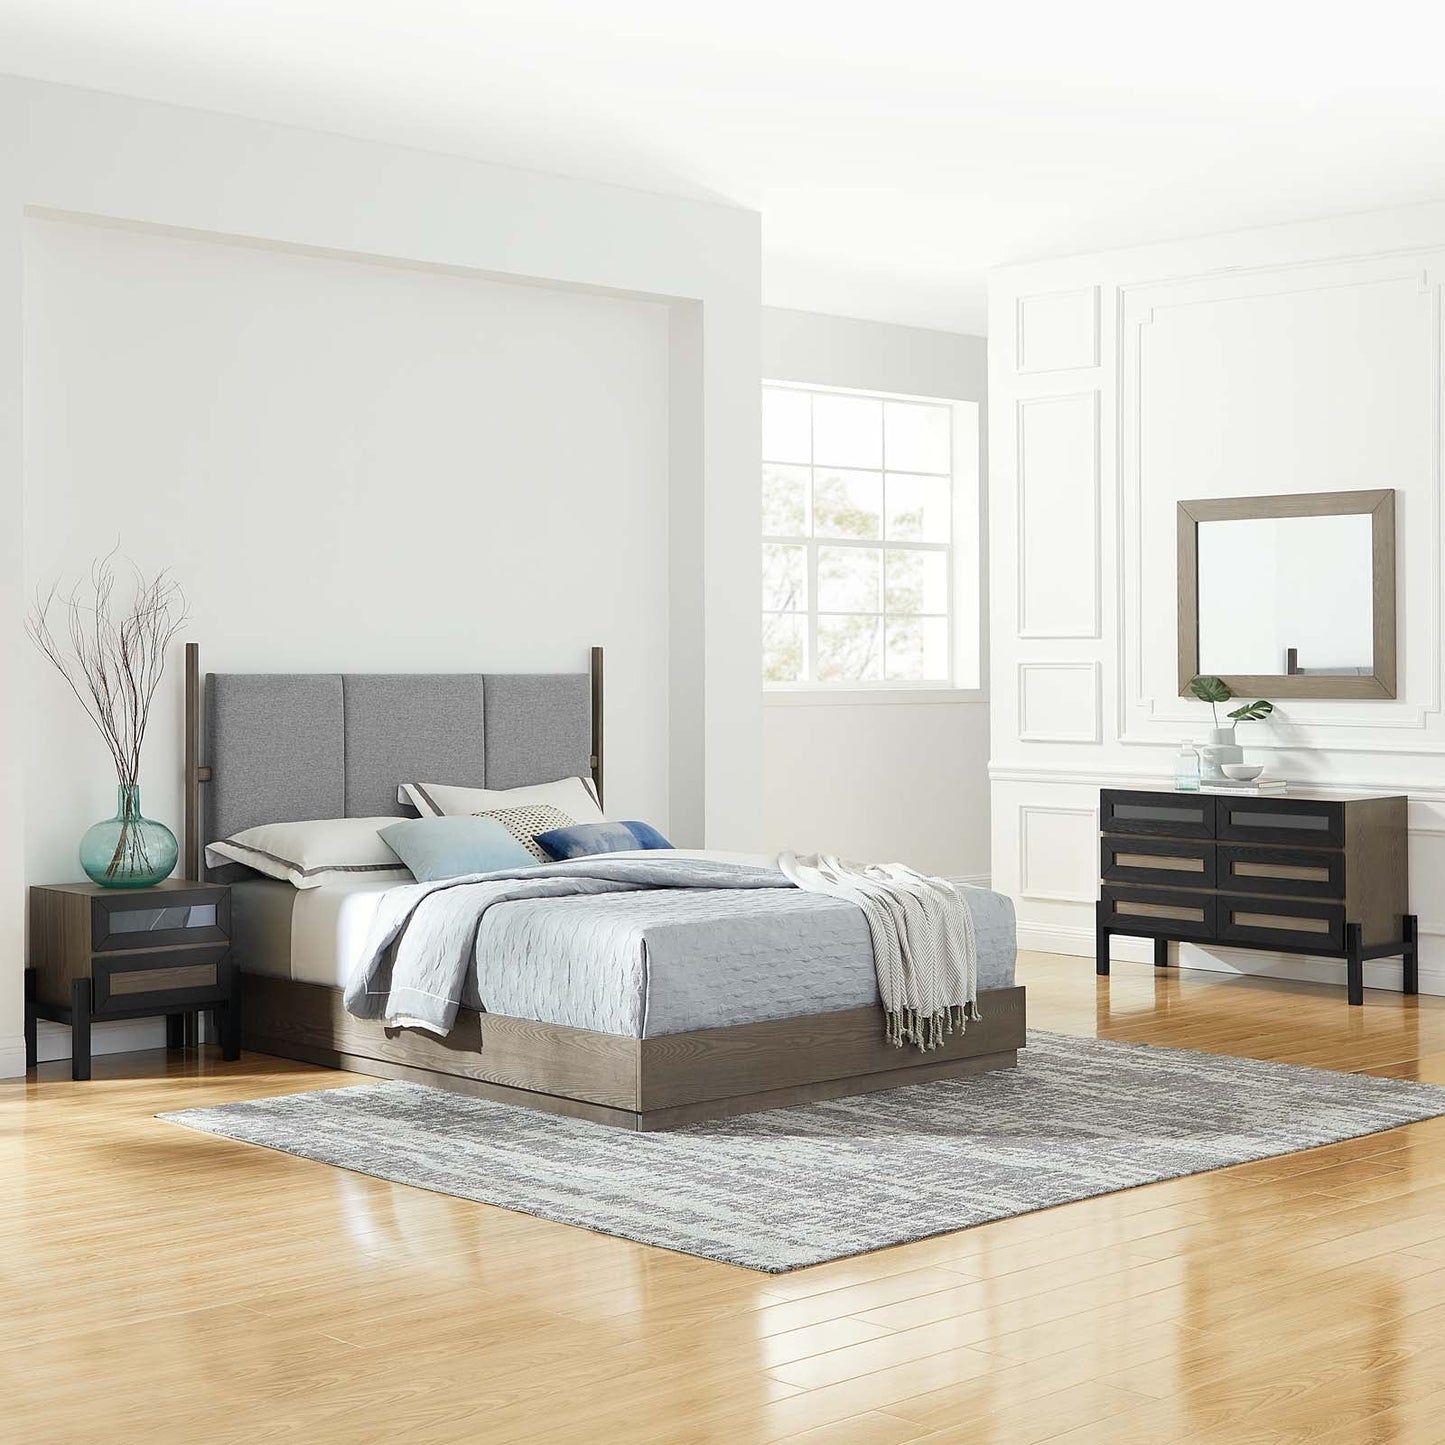 Merri 3 Piece Upholstered Bedroom Set